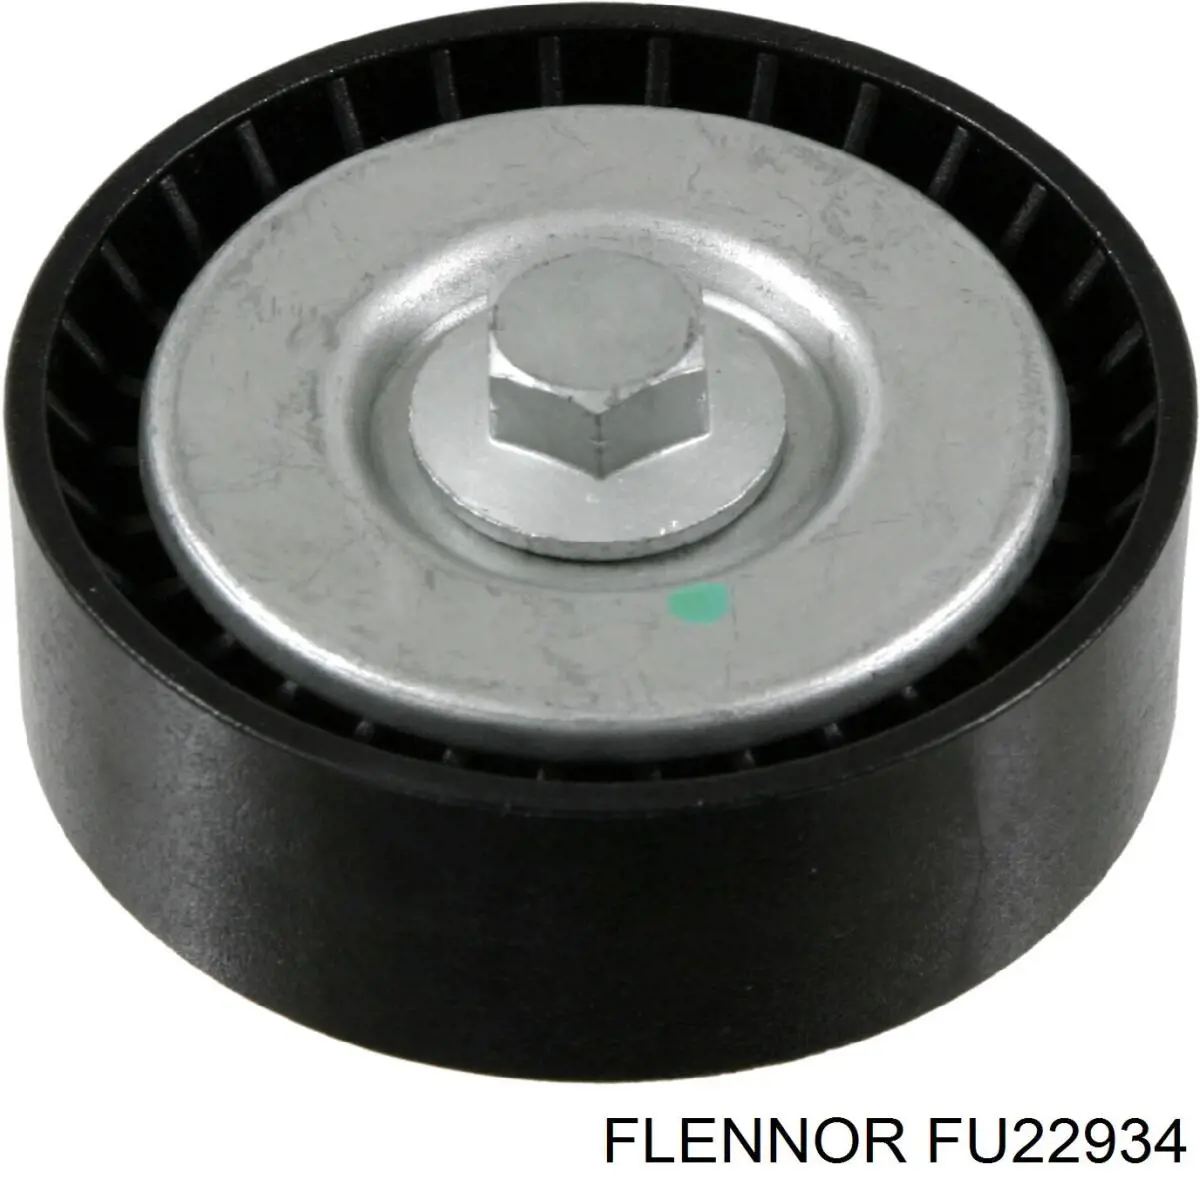 FU22934 Flennor polea inversión / guía, correa poli v